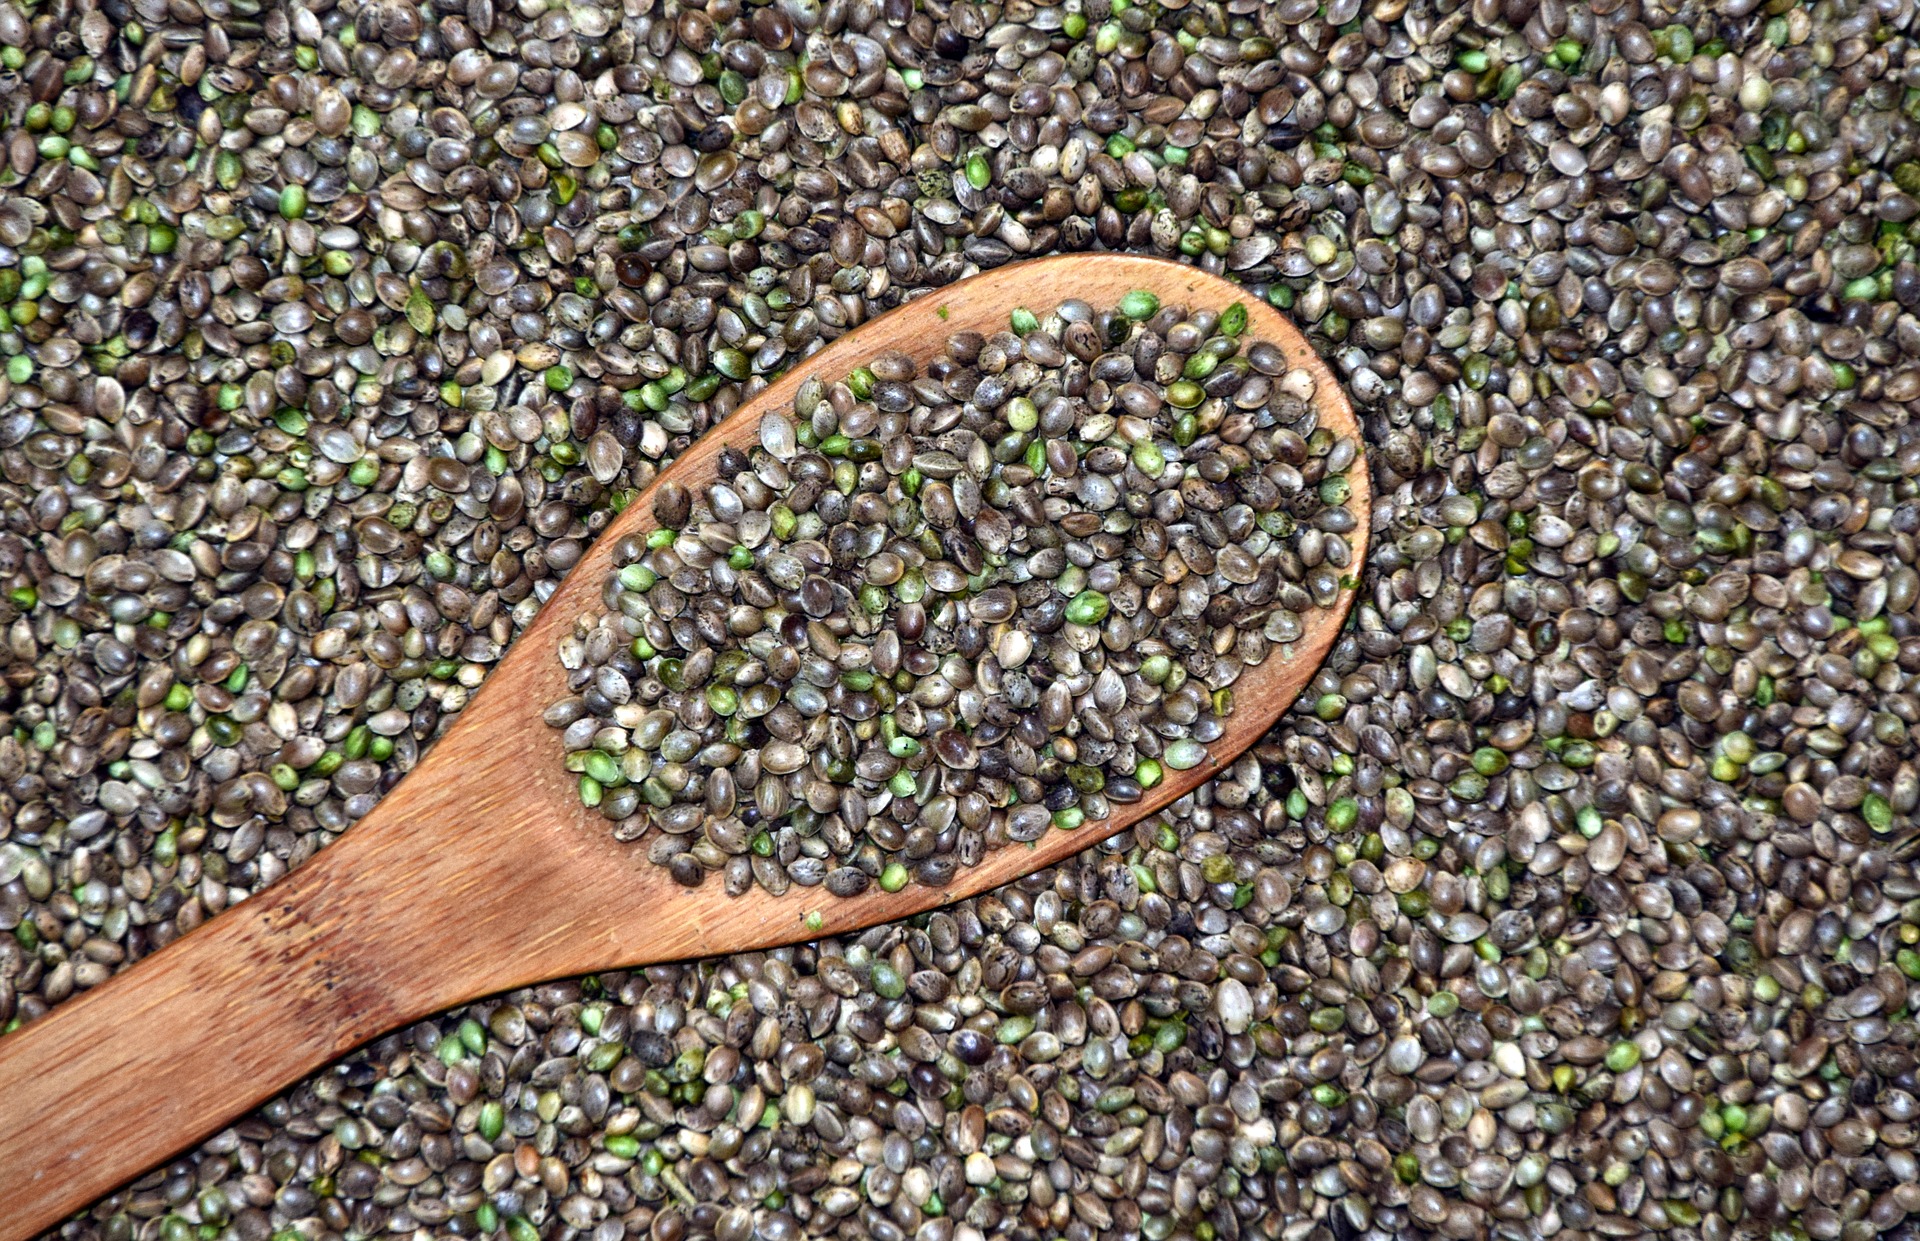 Hemp seeds in bulk